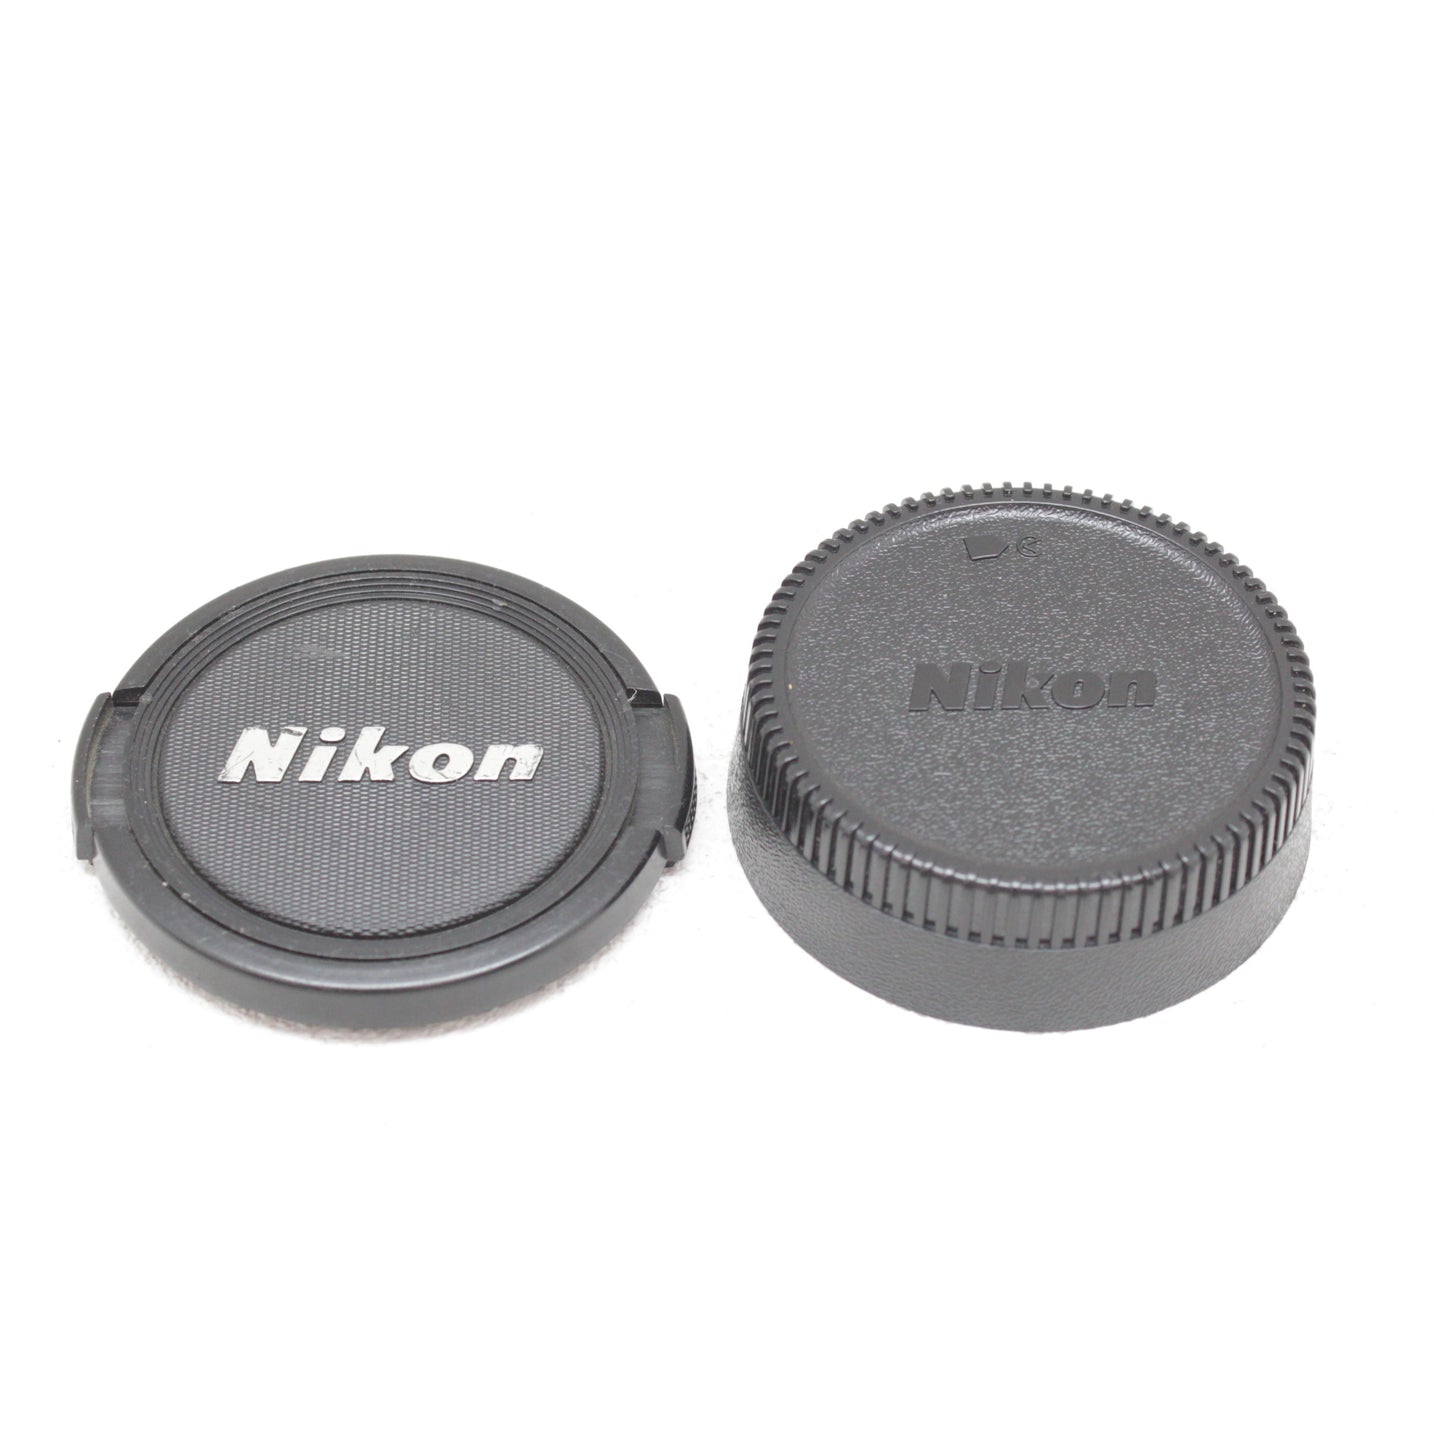 中古品 Nikon Ai-s NIKKOR 50mm F1.8